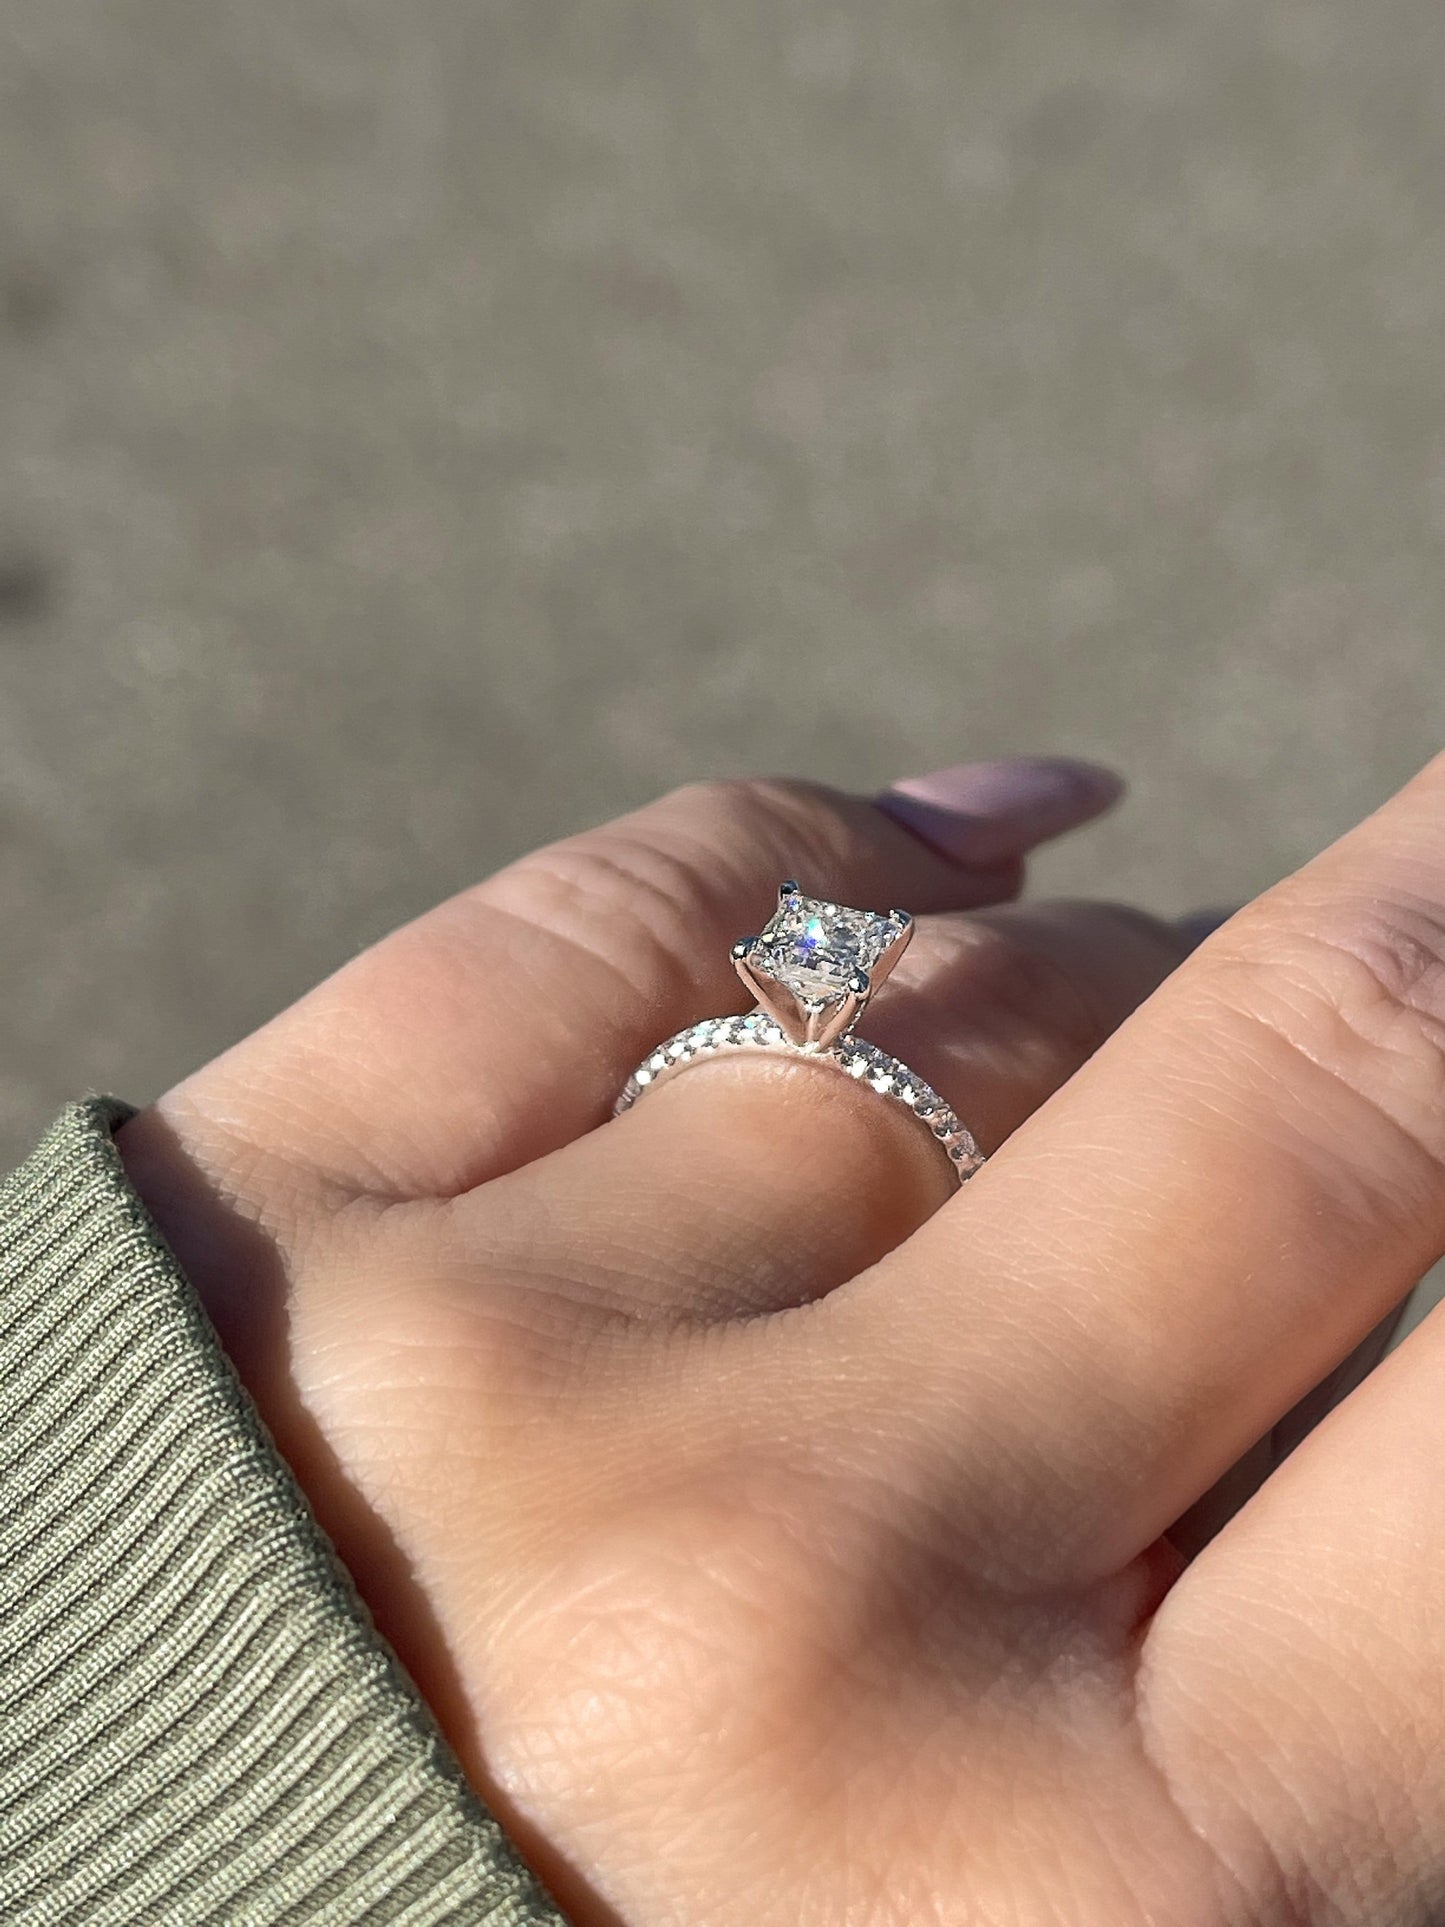 3.4 Carat Princess Cut Diamond Engagement Ring 14k White Gold – Balacia